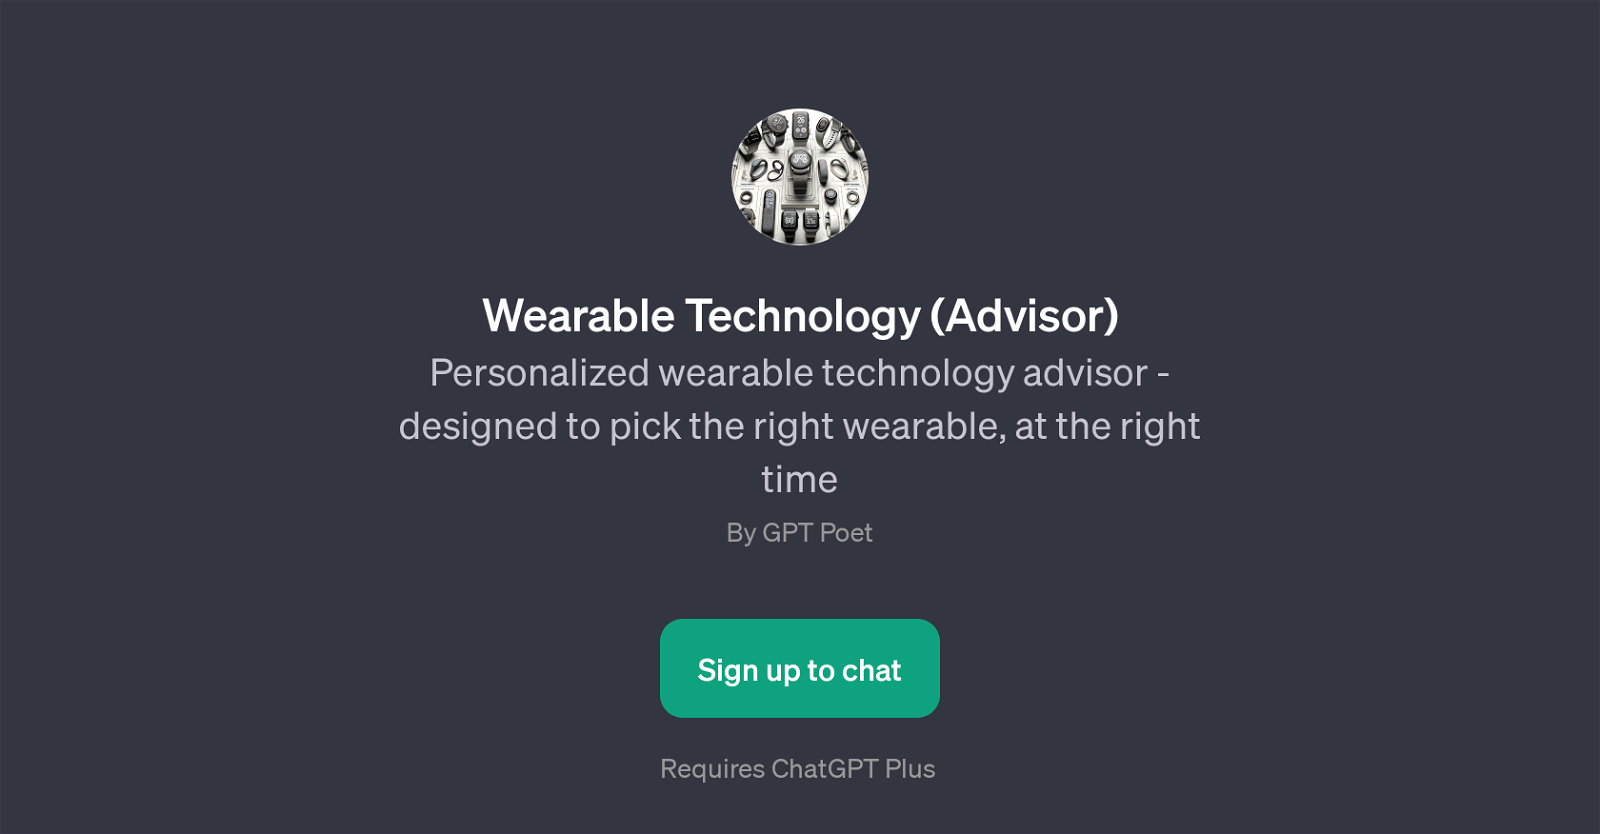 Wearable Technology (Advisor) website